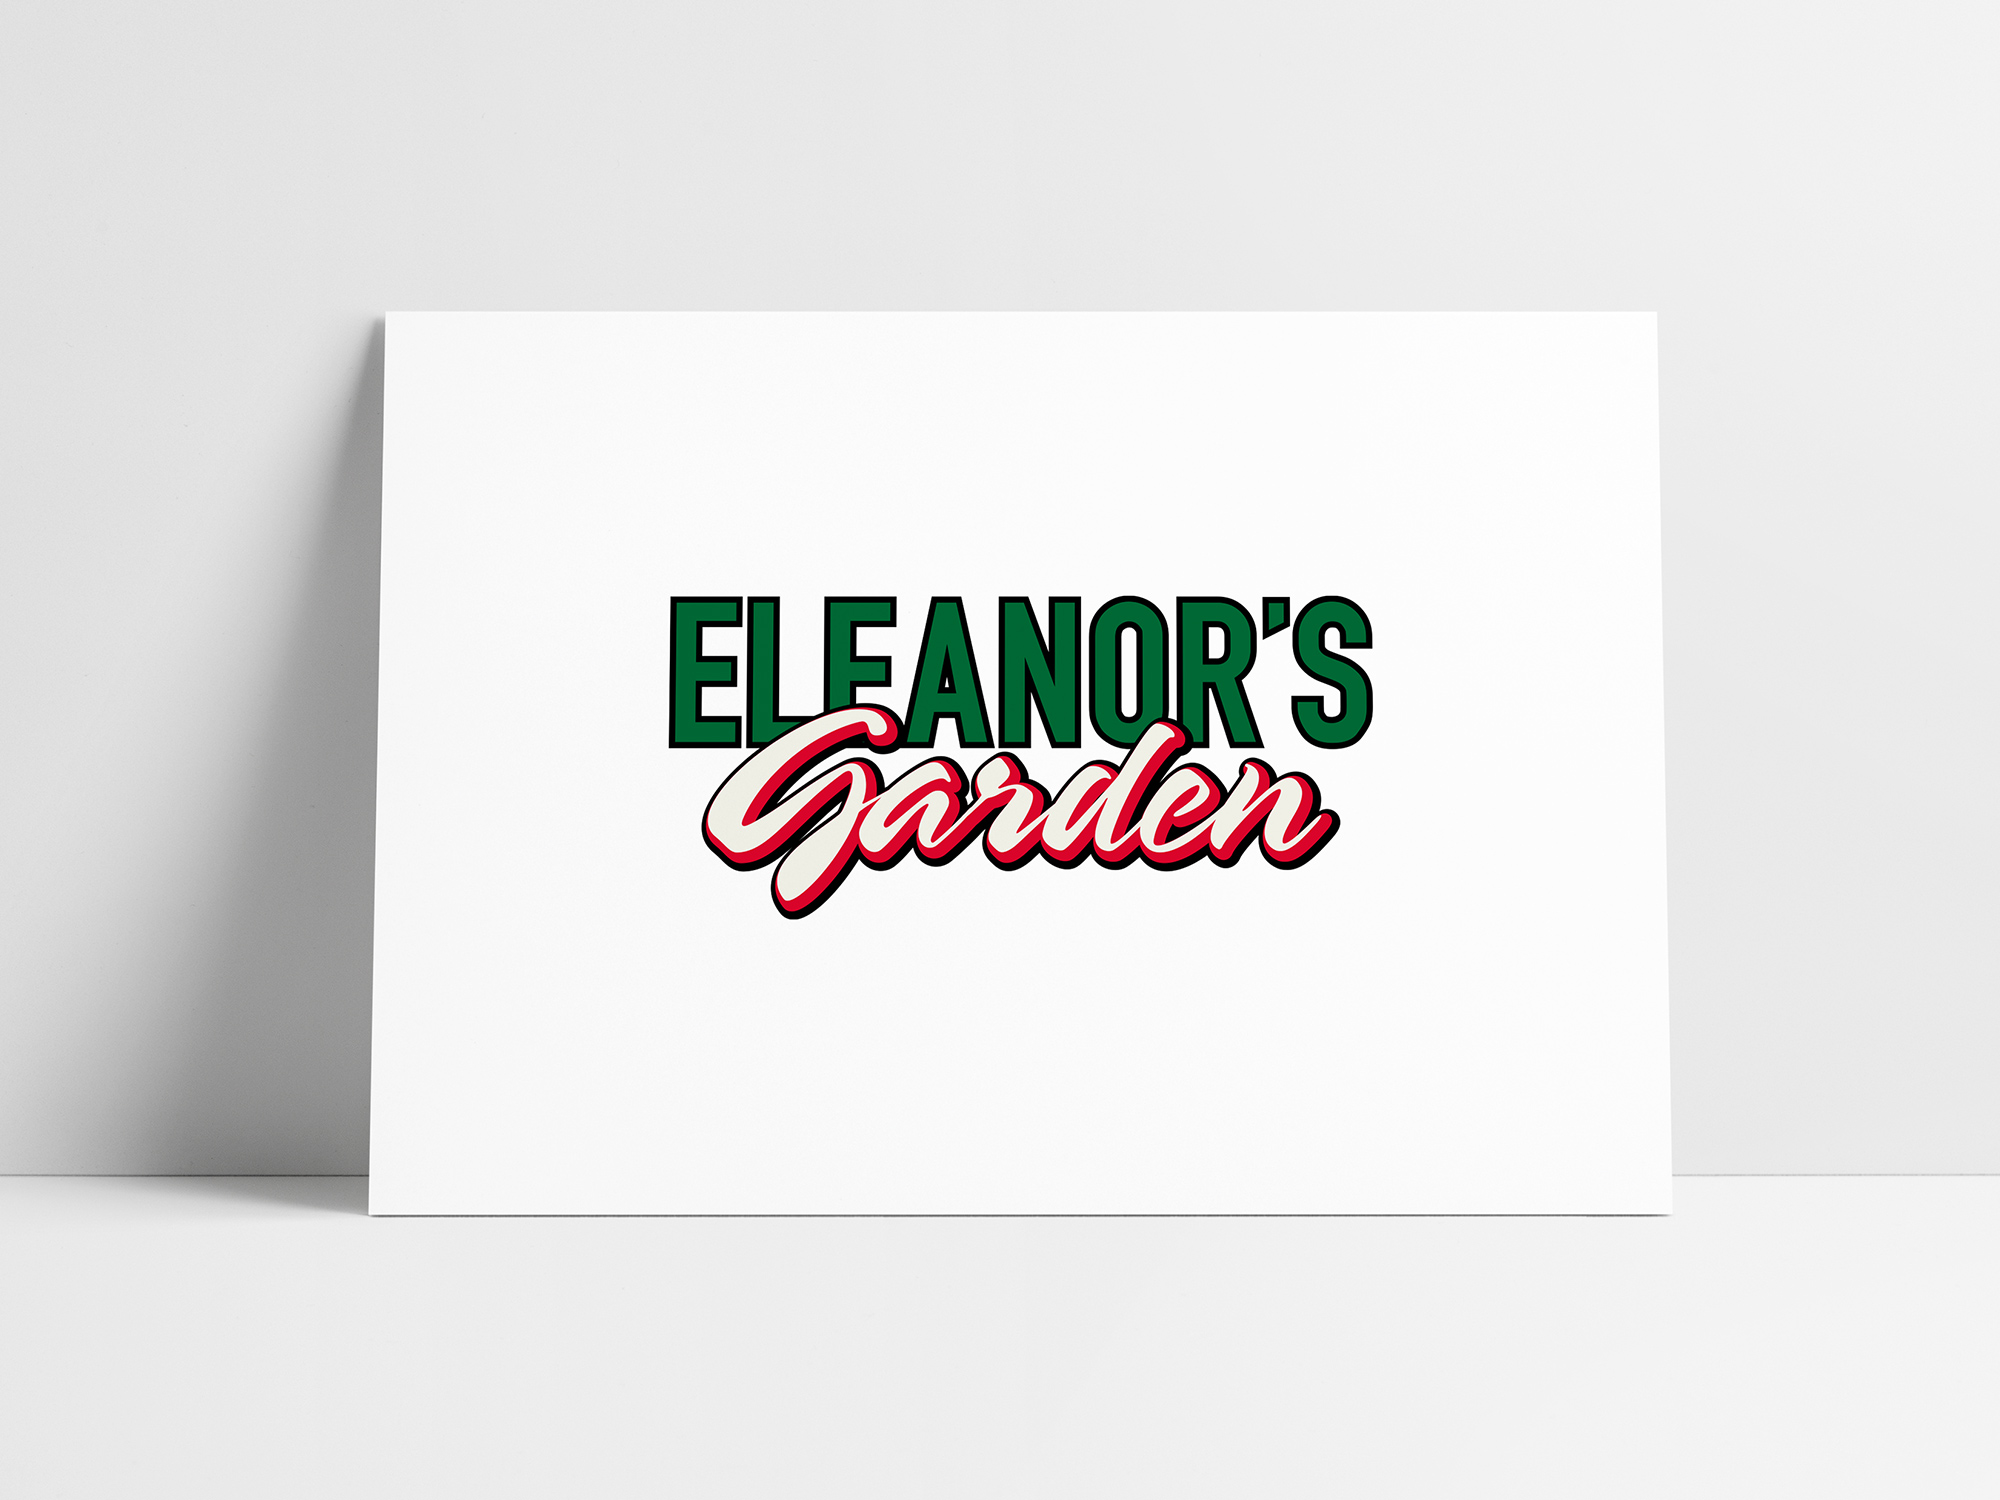 Eleanor's Garden